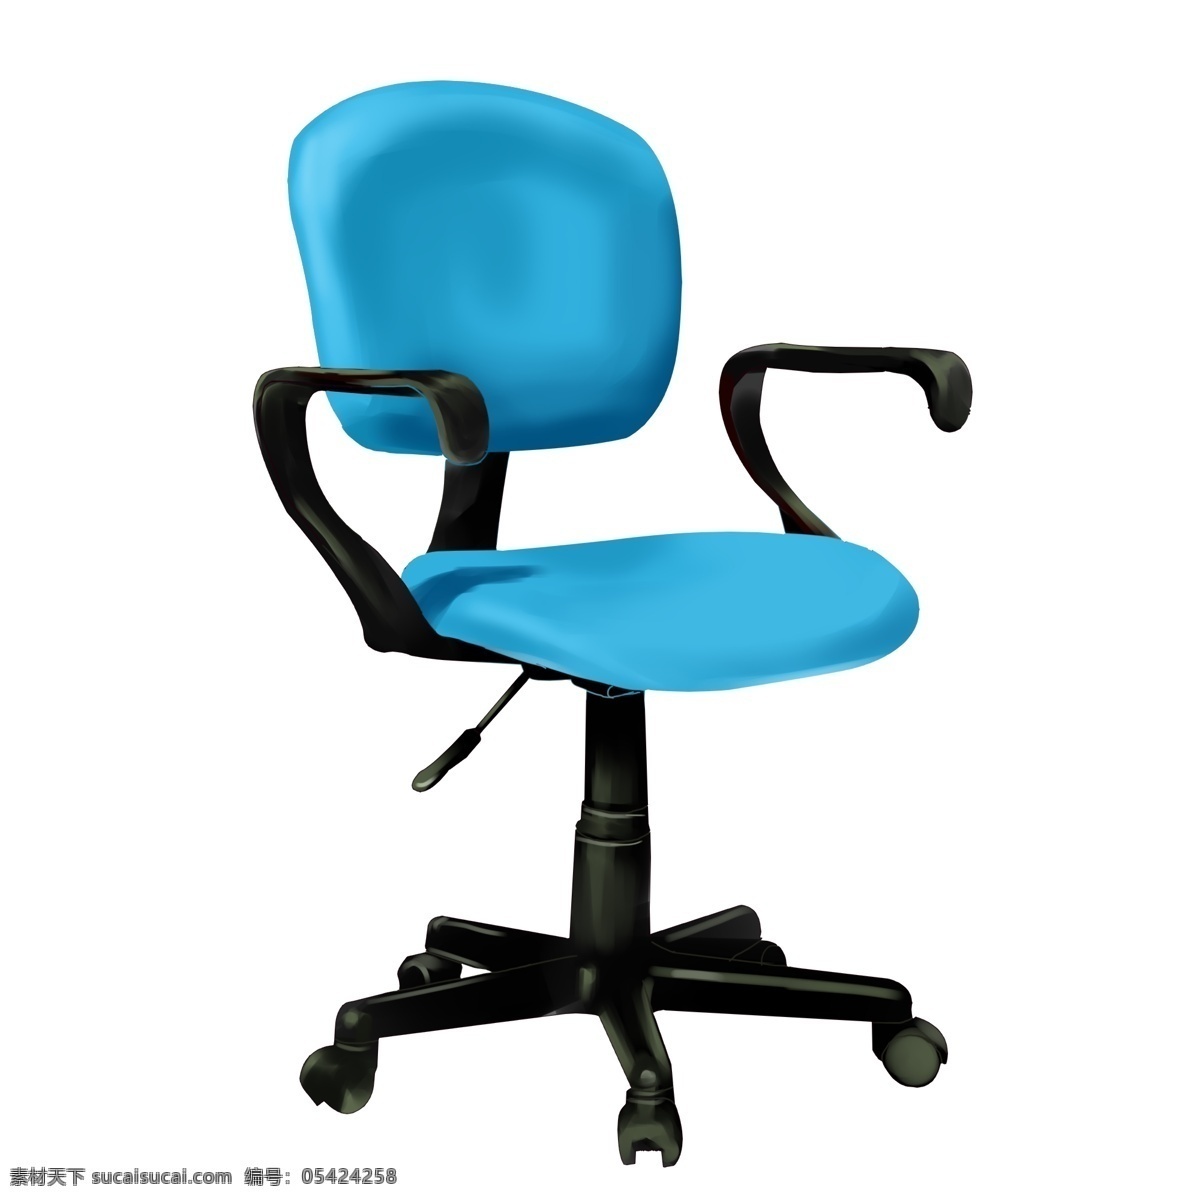 椅子 软座 升降 脚 仿真 皮质 座椅 真皮 皮质座椅蓝色 金属 凳子 多功能 滑轮 材质